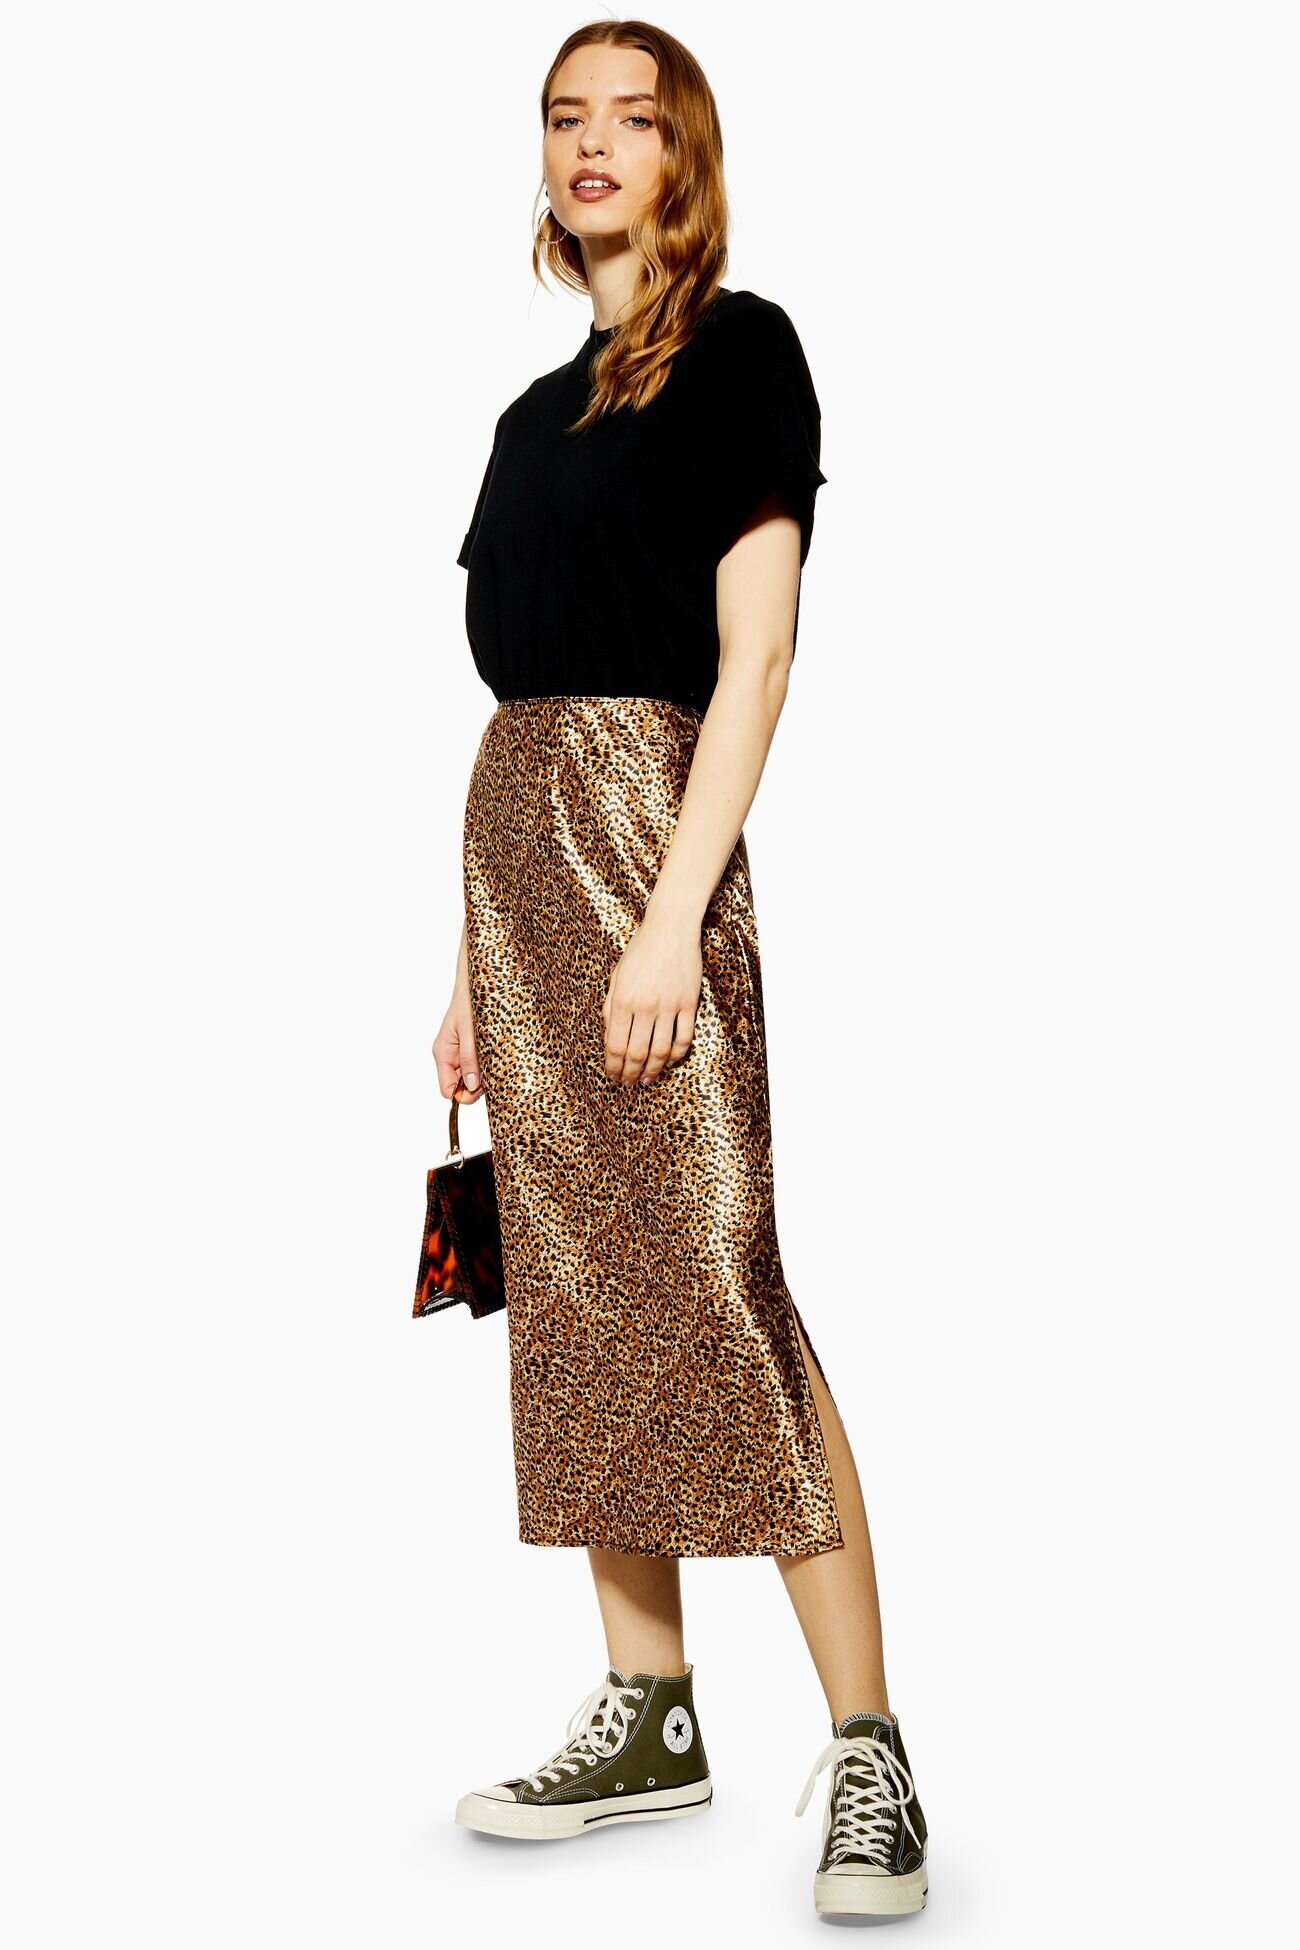 Leopard Print Denim Skirt - Inspiration for making the Ness skirt